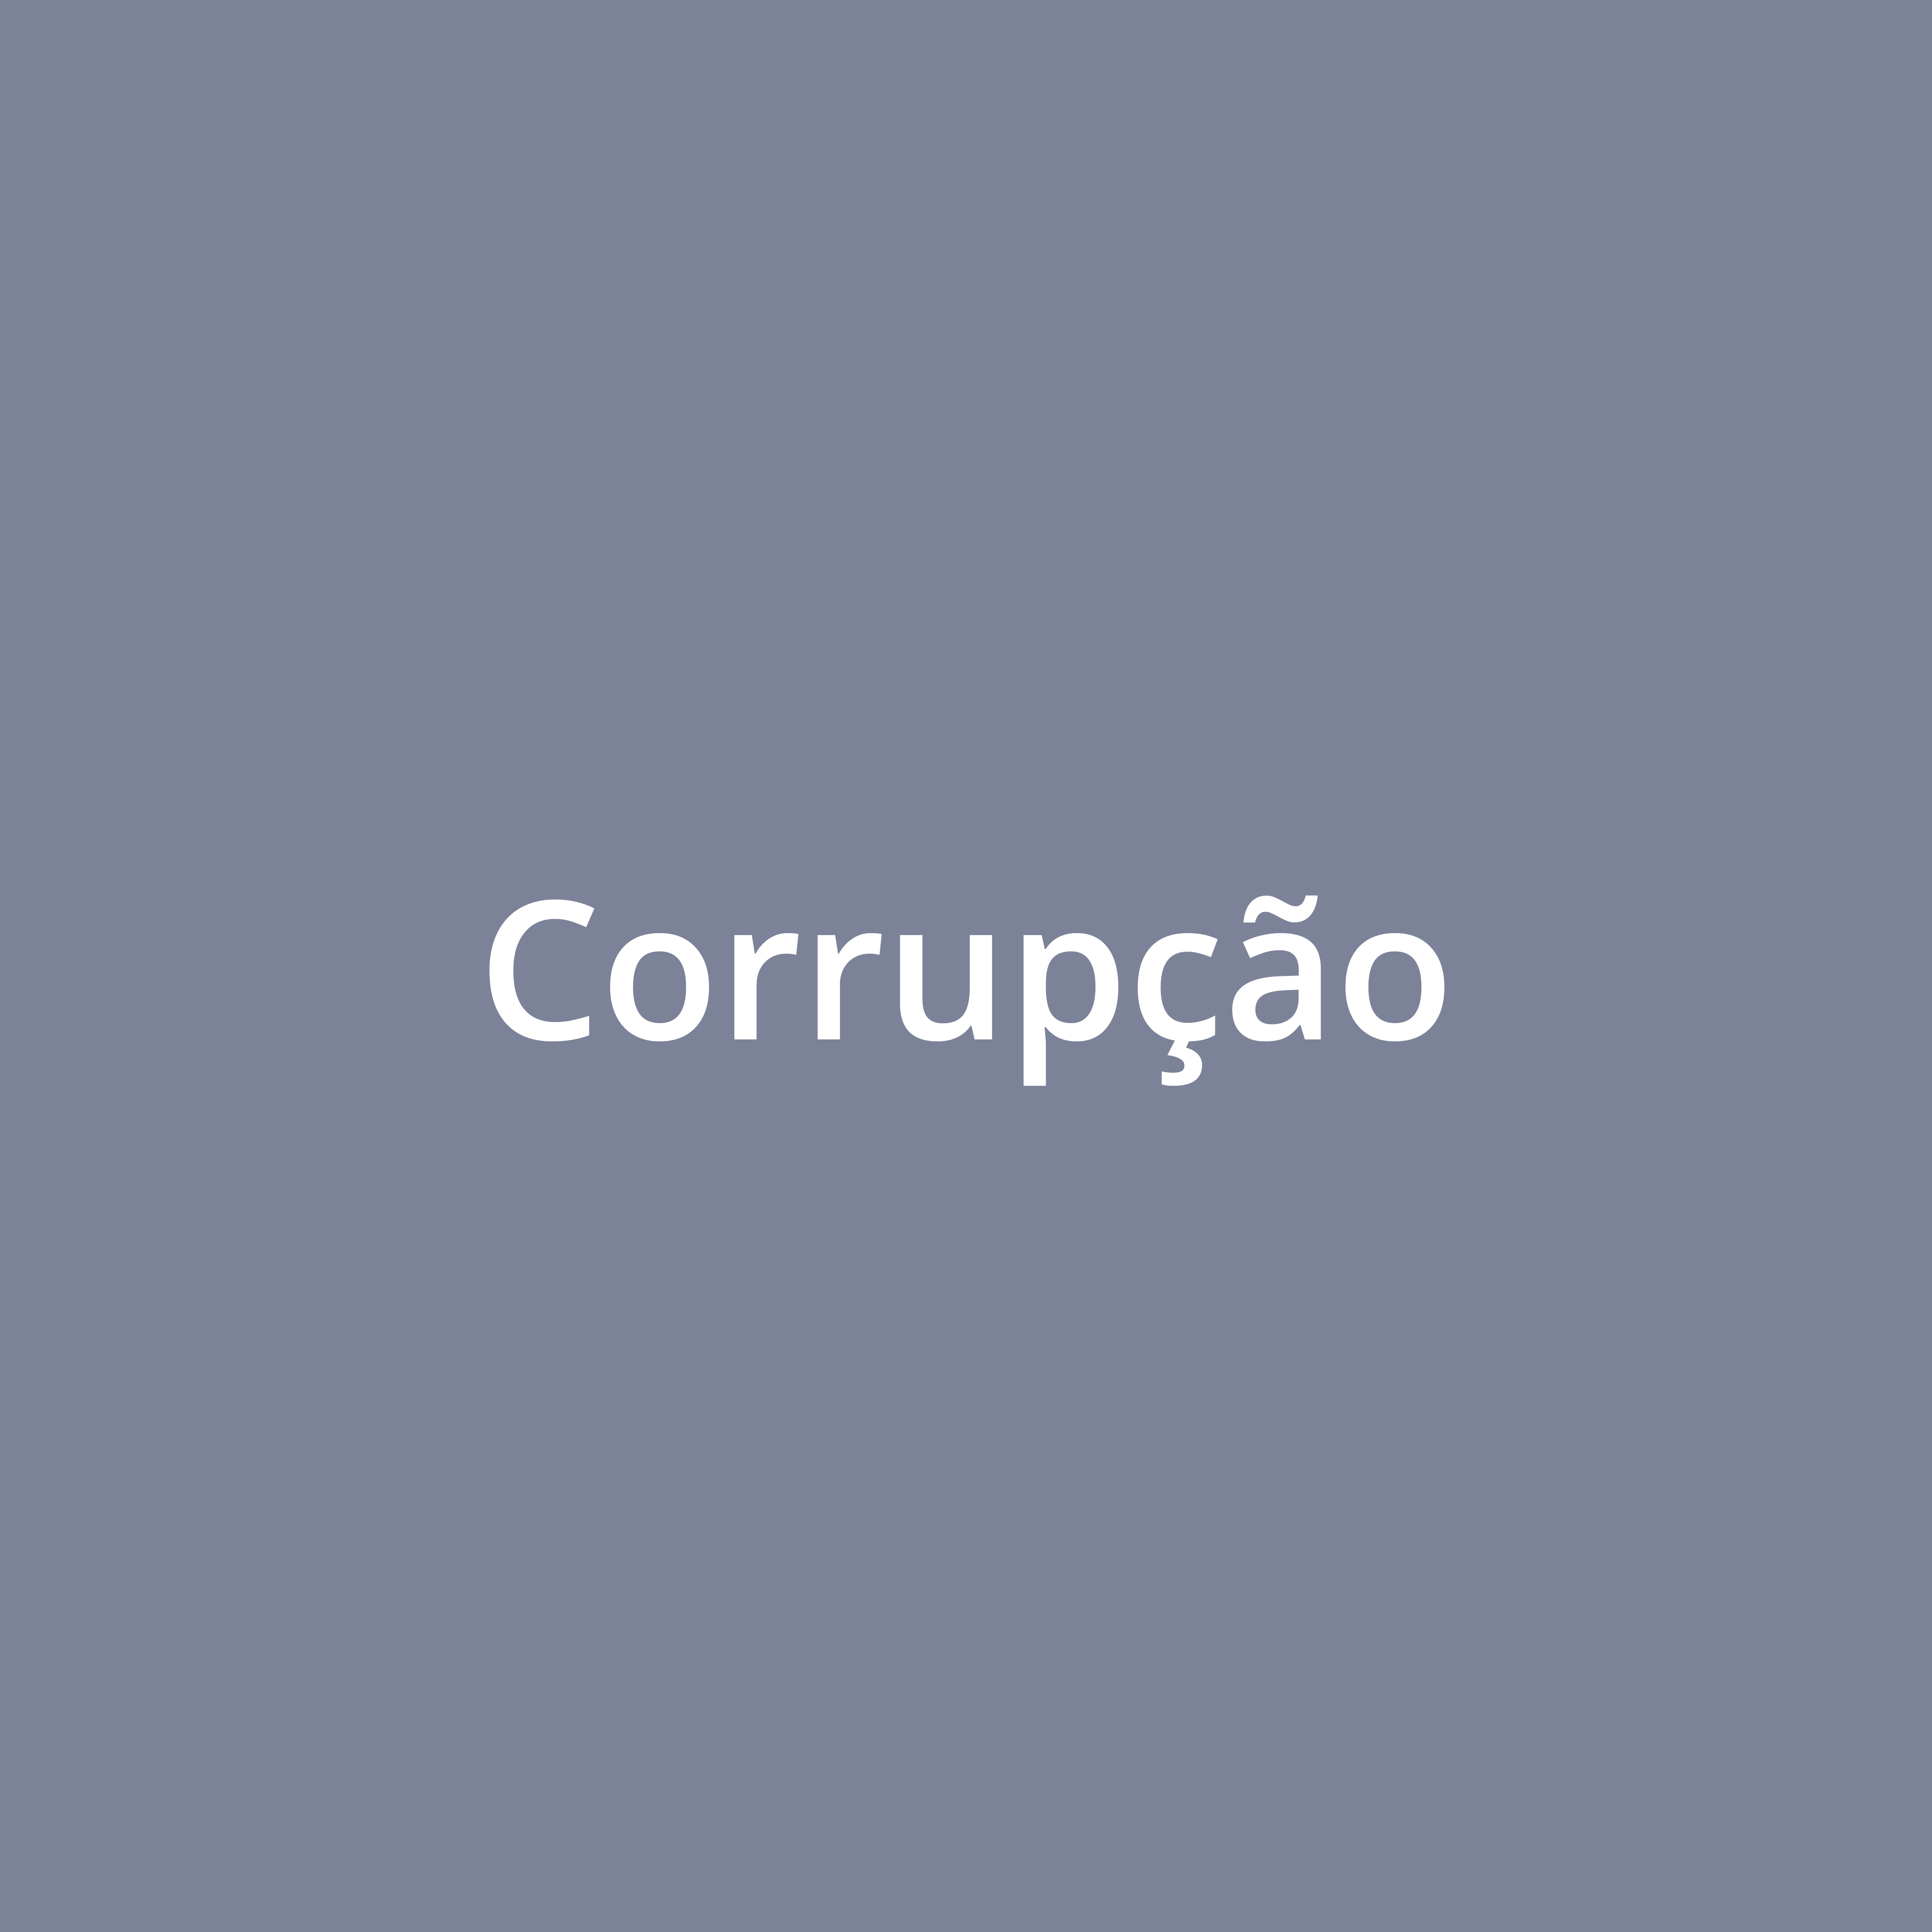 Corrupção